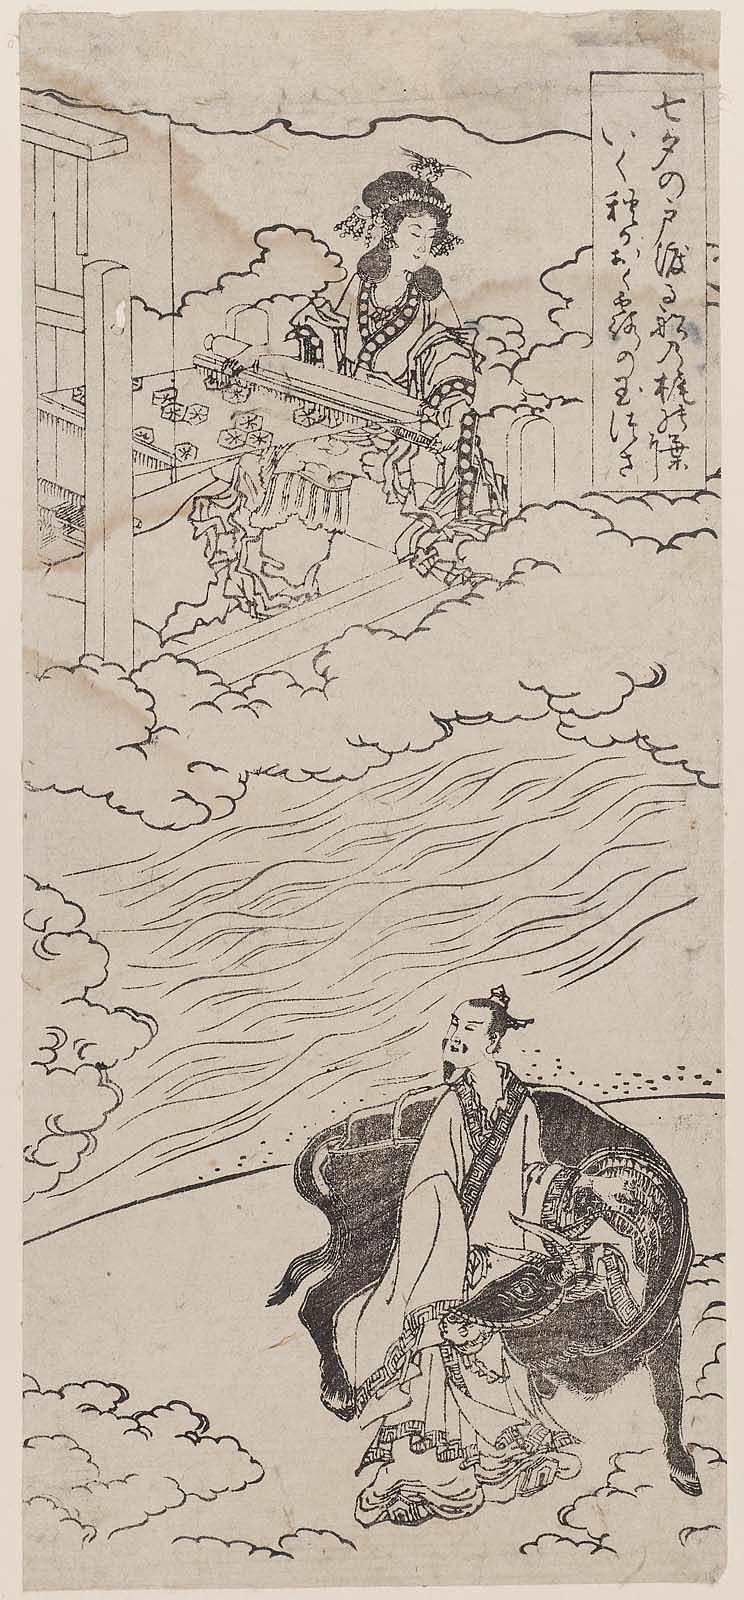 Czarnym tuszem na beżowym papierze linearnie zarysowana scena, w której występują dwie postacie oddzielone od siebie rzeką. W wyższej części grafiki, wśród chmur, ukazana jest wystrojona kobieta przy warsztacie tkackim. Tkanina, którą tworzy, udekorowana jest gwiazdami. Po prawej stronie, w ramce napis w języku japońskim. W niższej części grafiki ukazany jest mężczyzna w długiej szacie, trzymający dłoń na karku dużego, czarnego wołu.